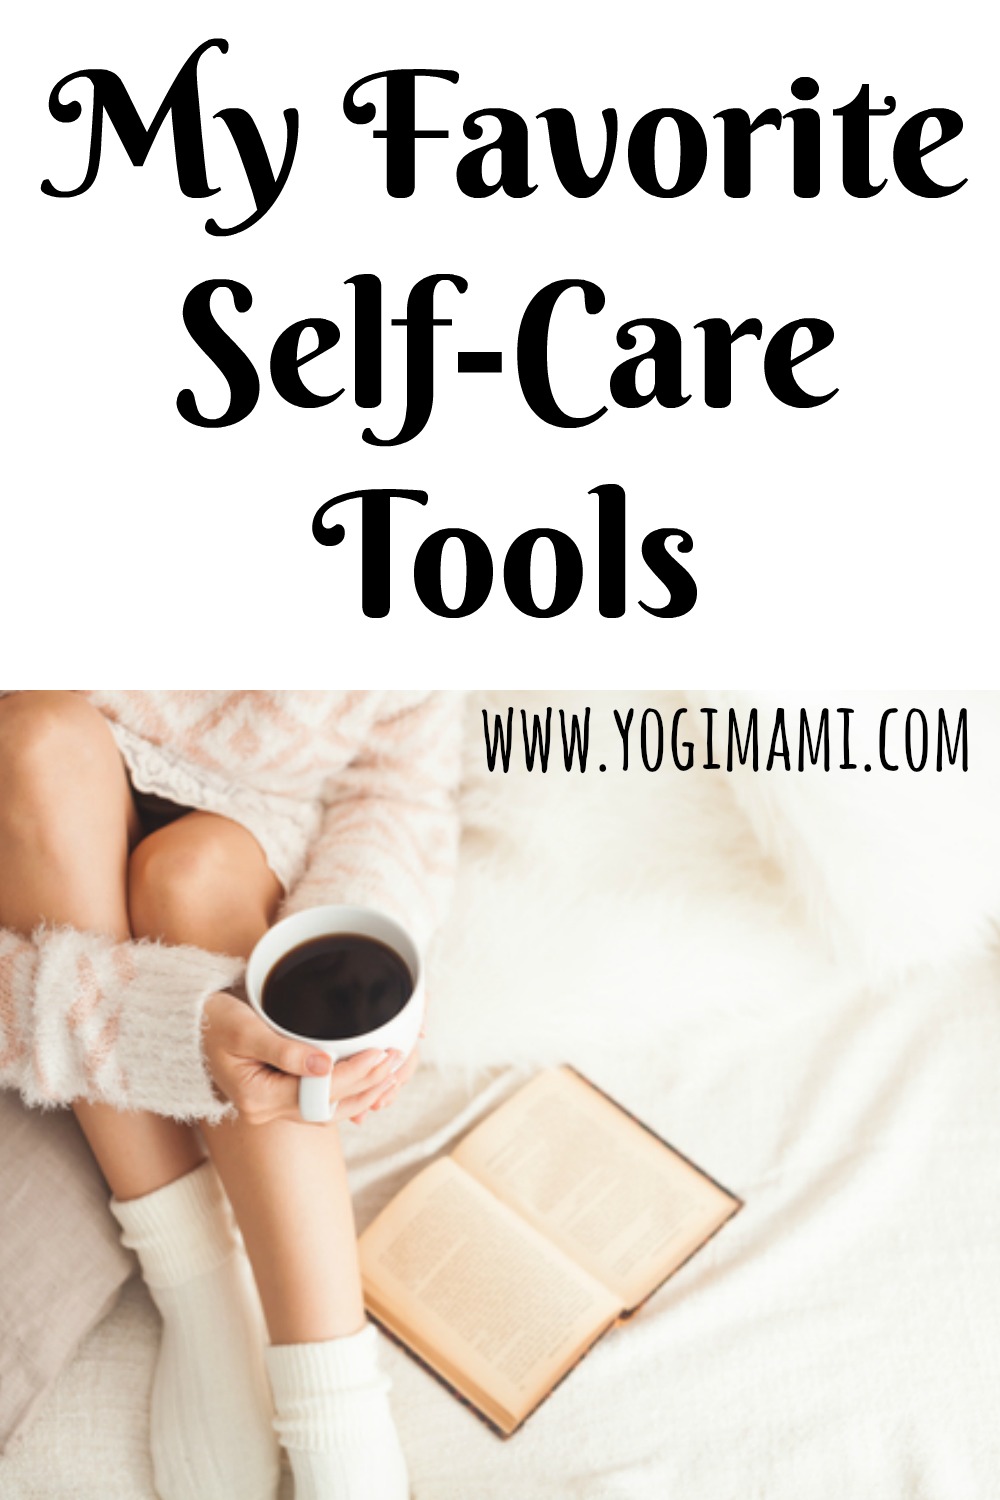 Self Care tools